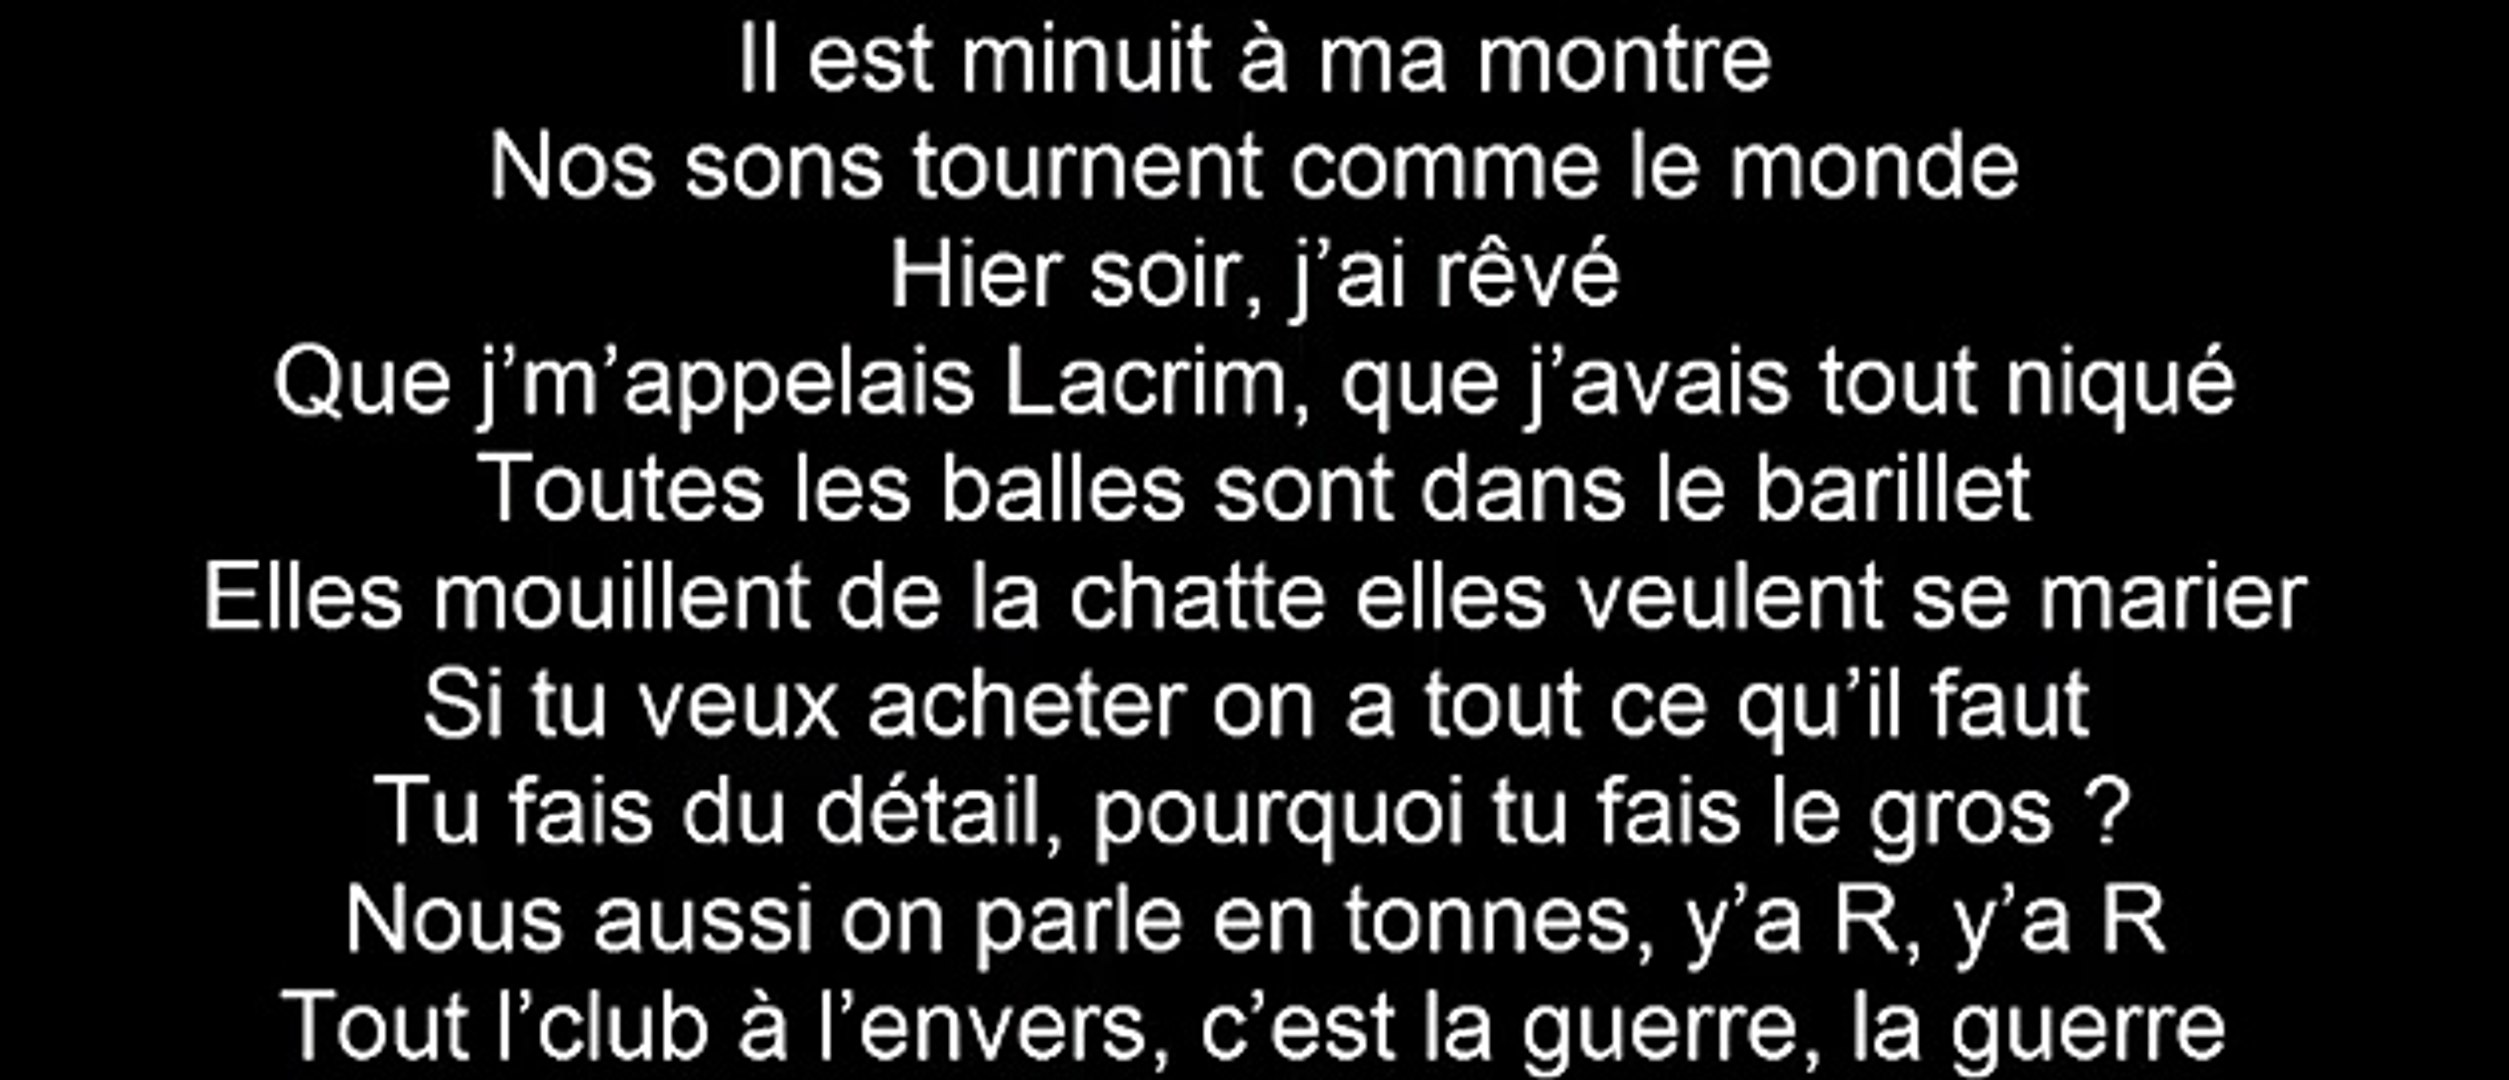 Lacrim Ft. Maître Gims - Petit Jaloux (paroles) (lyrics) - Vidéo Dailymotion